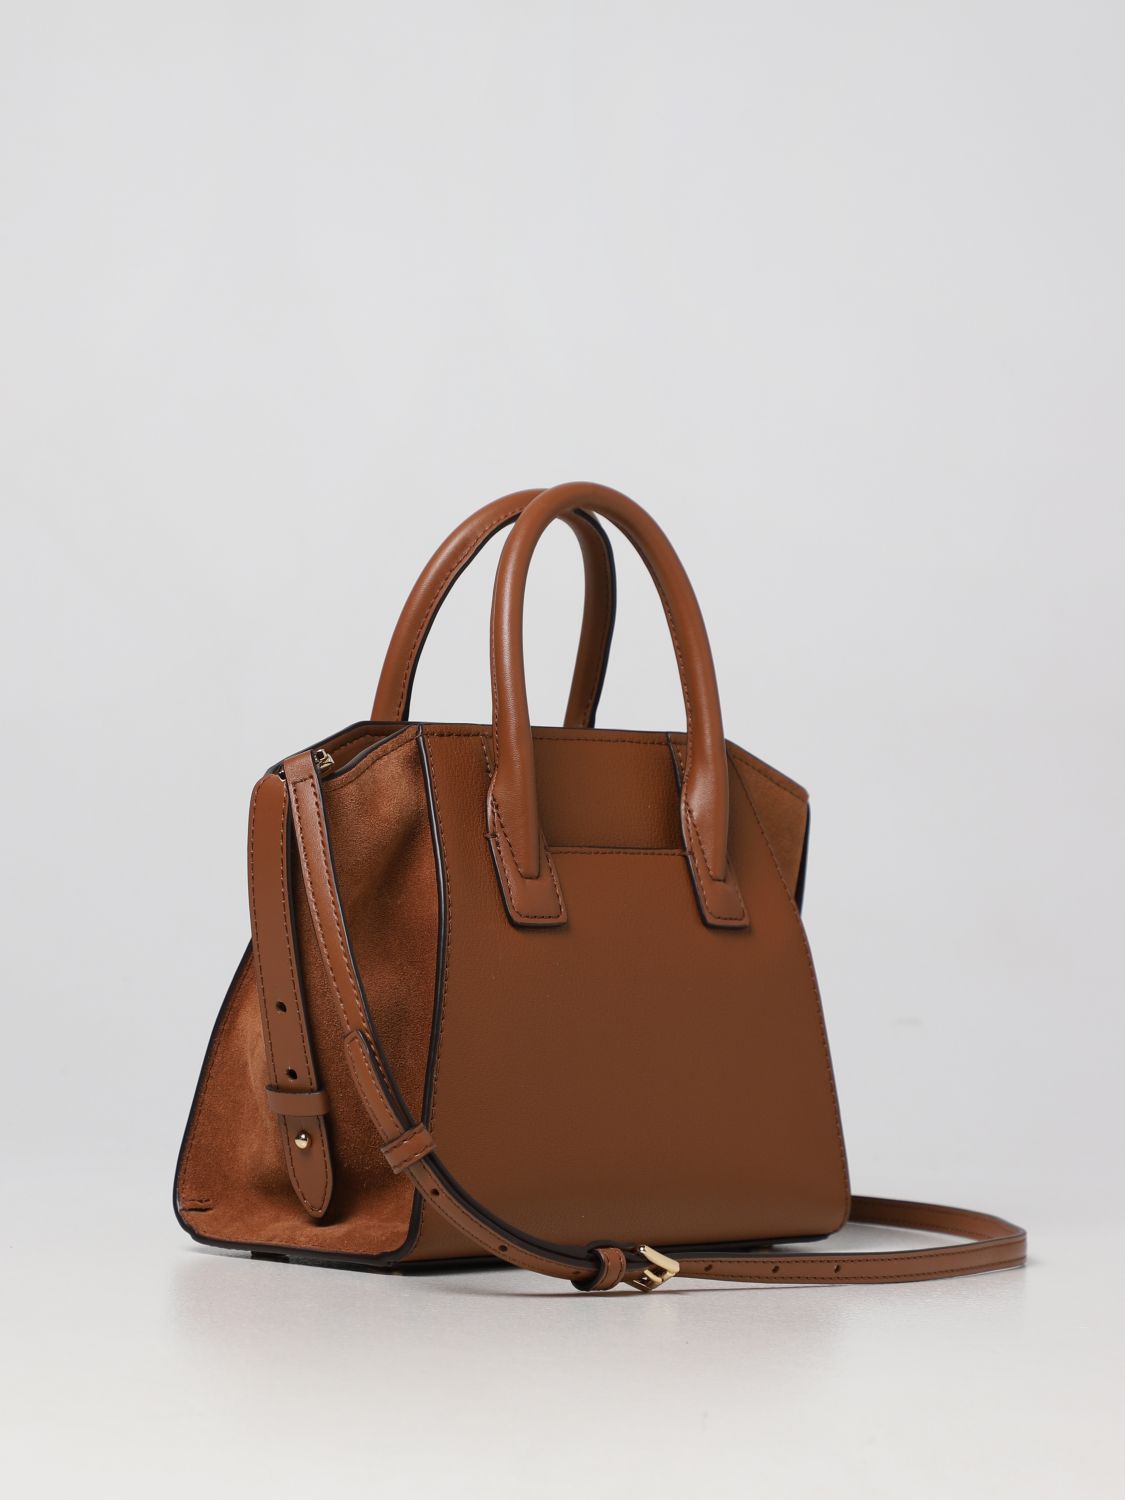 MICHAEL KORS: handbag for woman - Leather | Michael Kors handbag ...